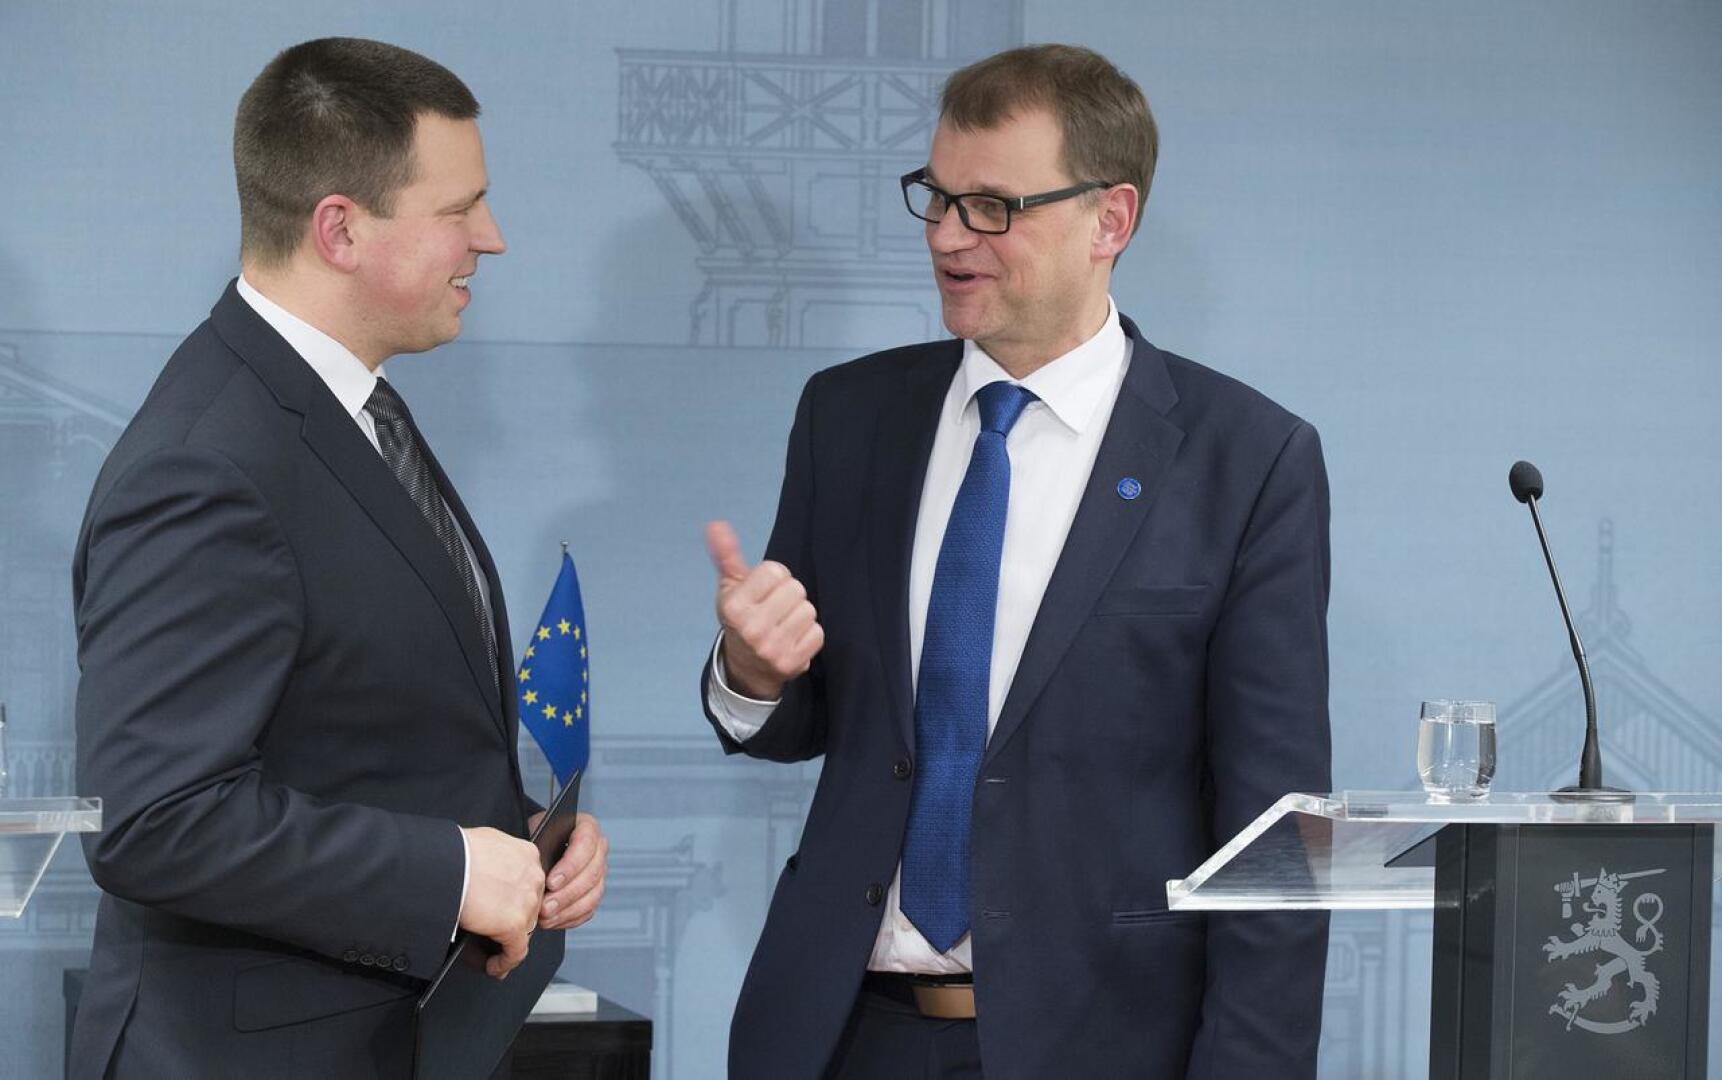 Viron pääministeri Jüri Ratas (vasemmalla) teki ensimmäisen valtiovierailunsa joulukuussa 2016 Suomeen. Kesärannassa hänet otti vastaan pääministeri Juha Sipilä.